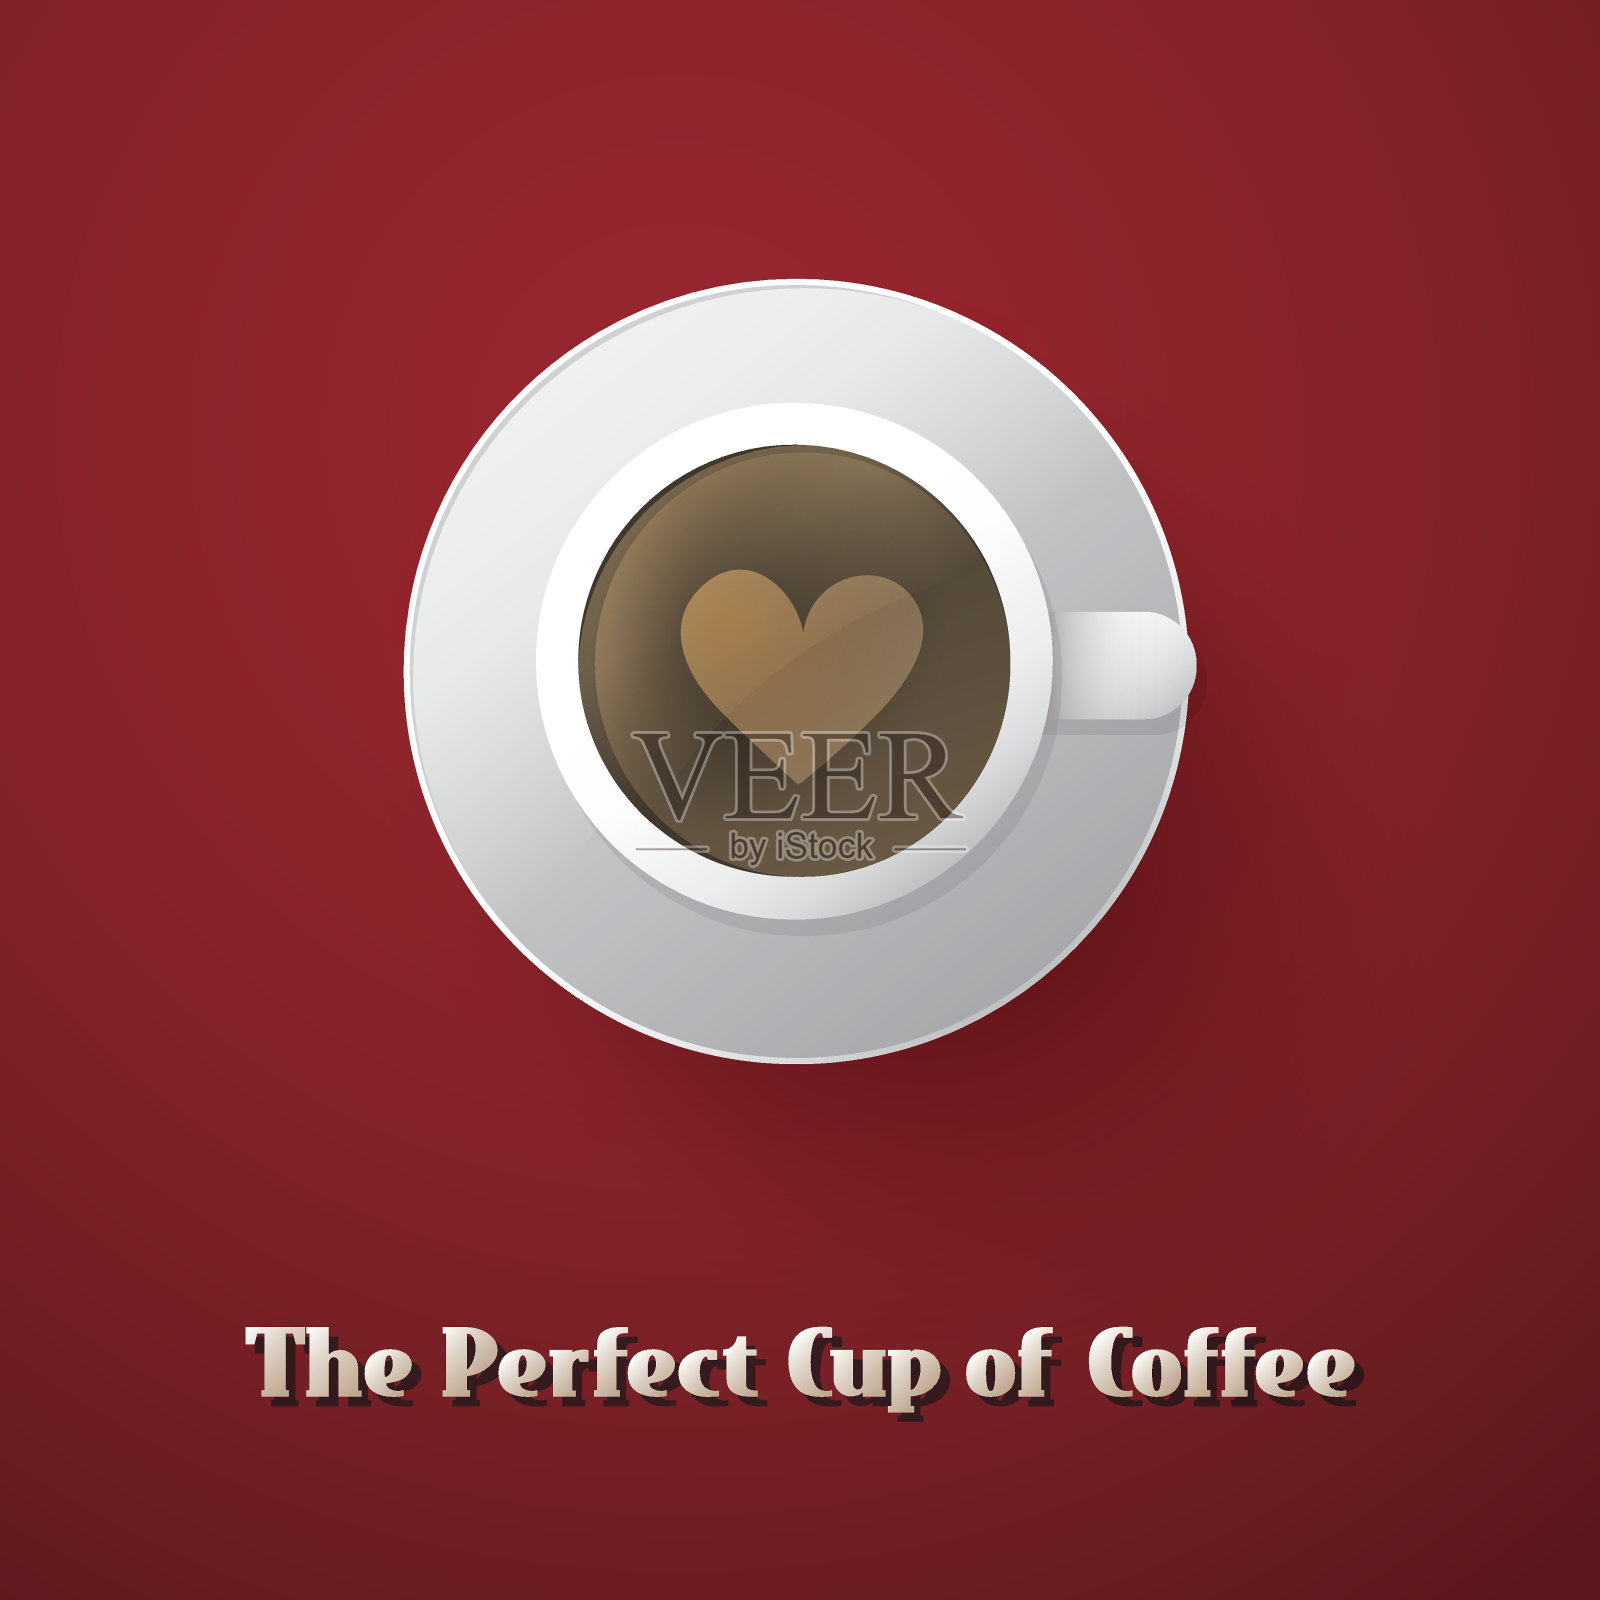 咖啡杯的概念设计元素图片